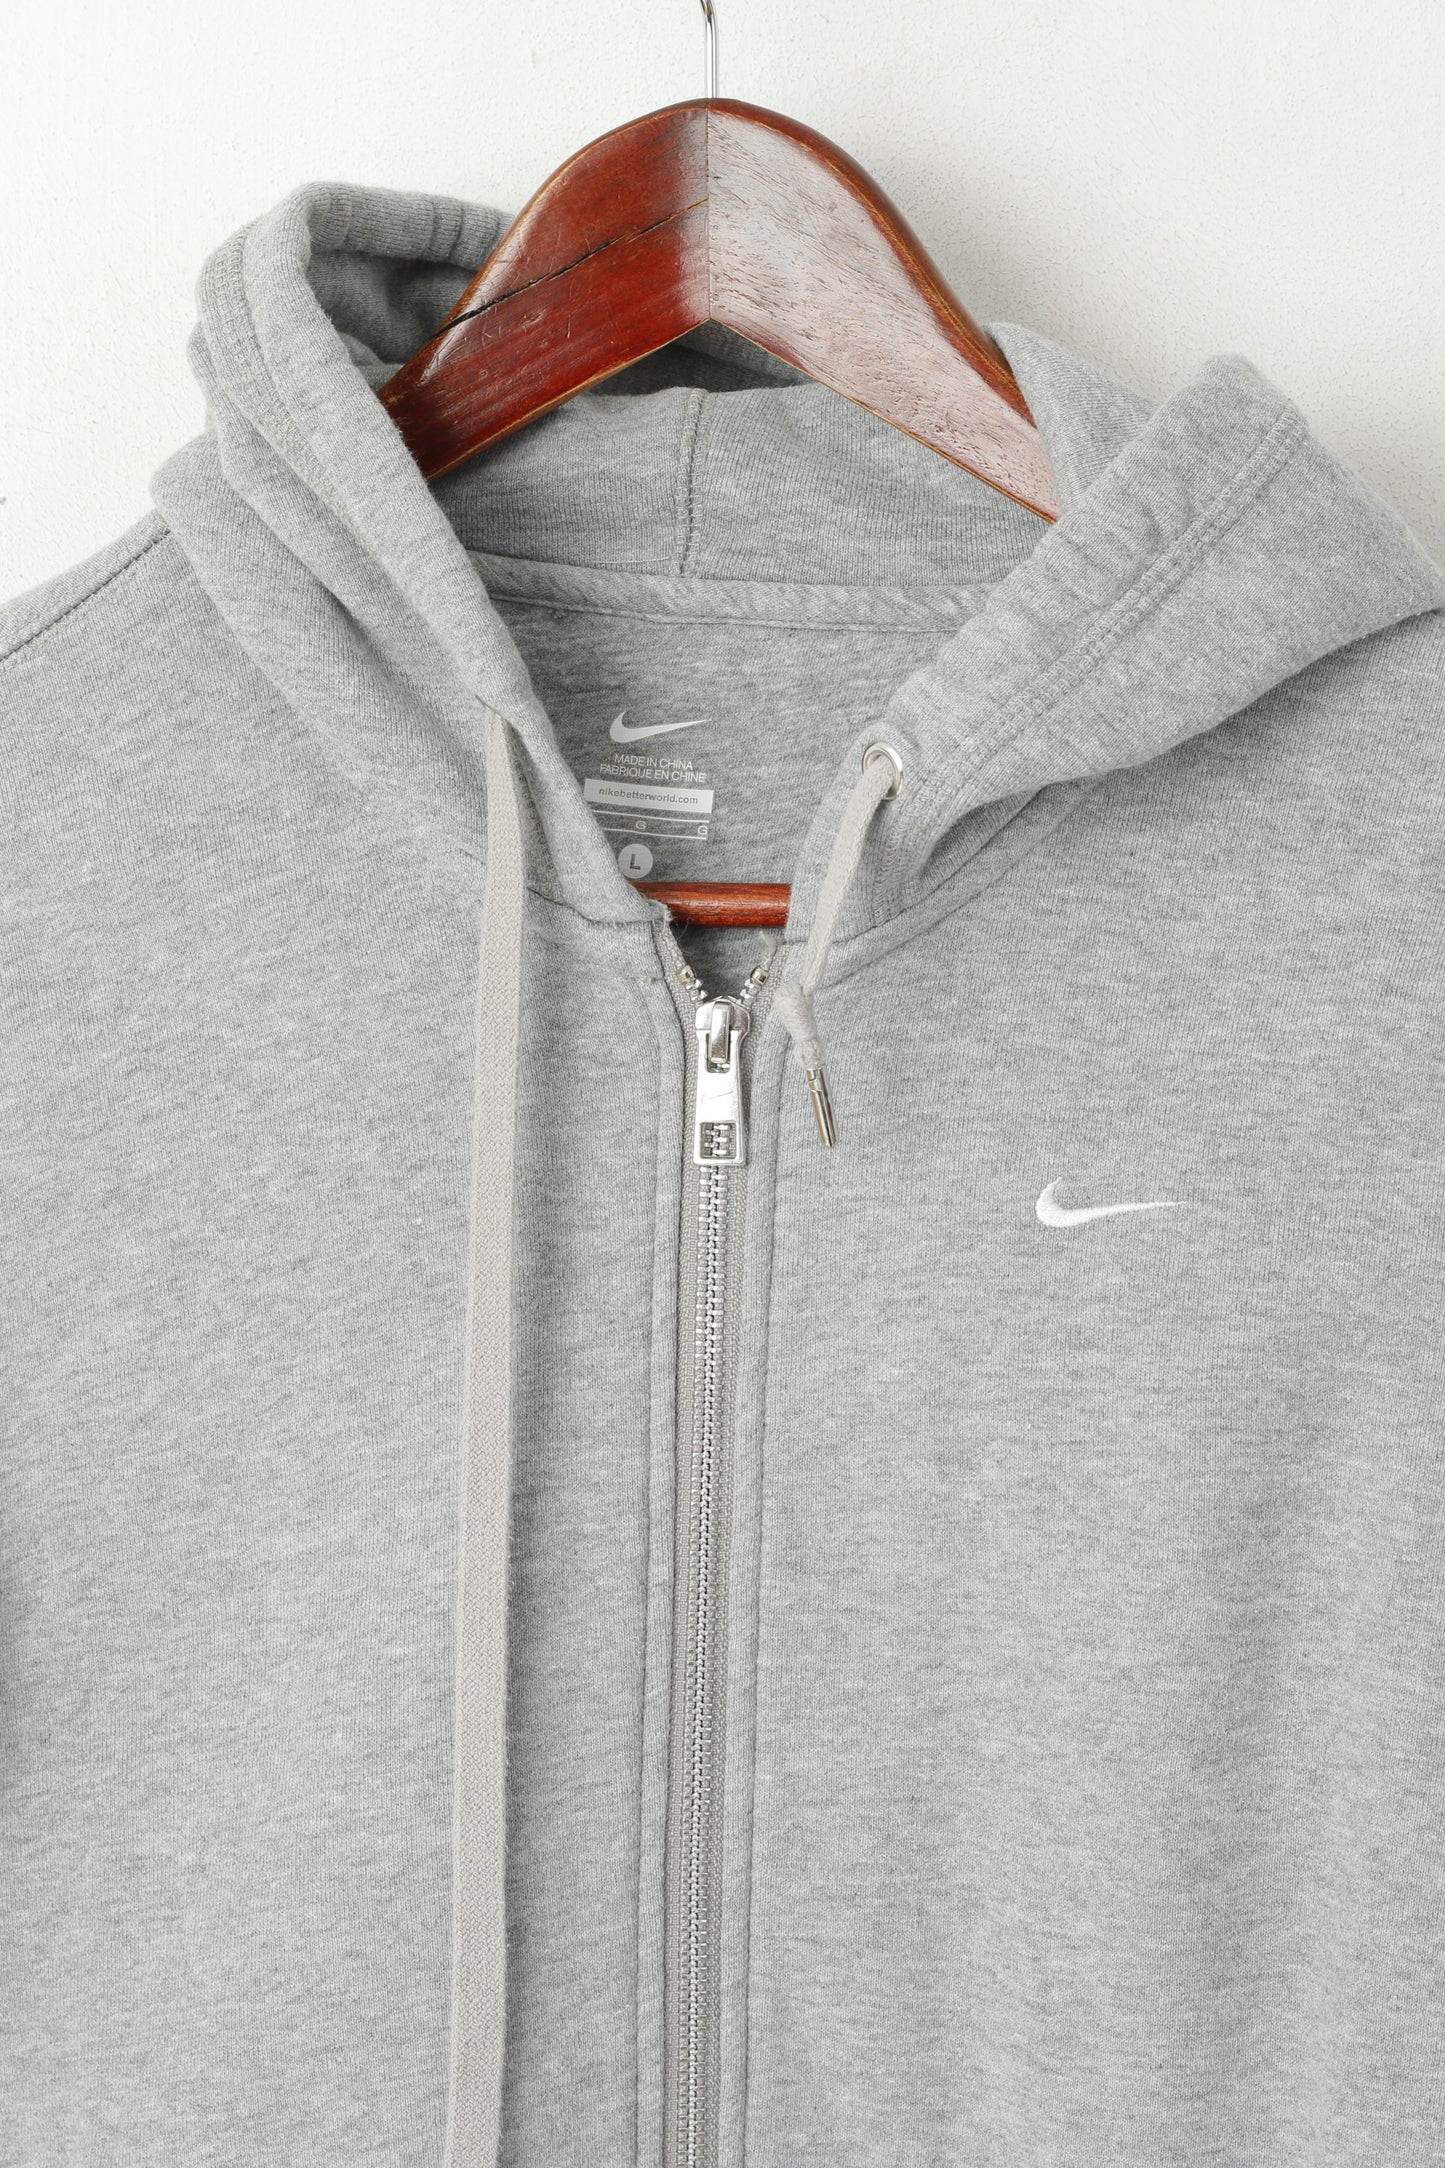 Felpa Nike L da donna, in cotone grigio, con cerniera intera, abbigliamento sportivo